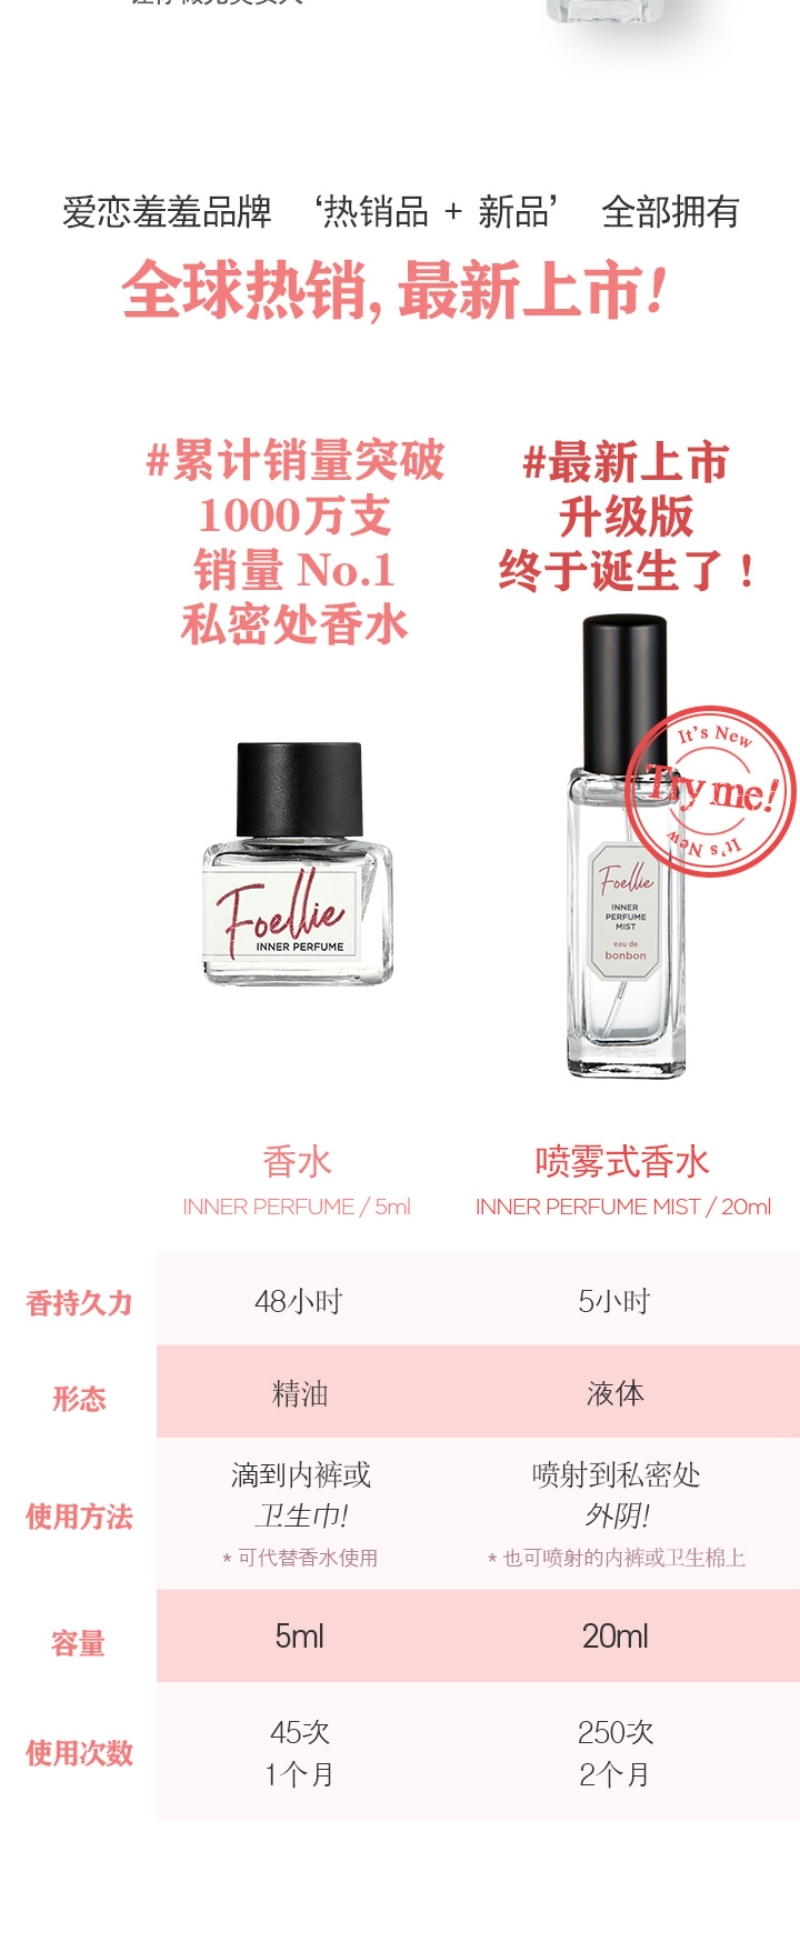 Foellie Inner Perfume Mist 20ml D02.jpg